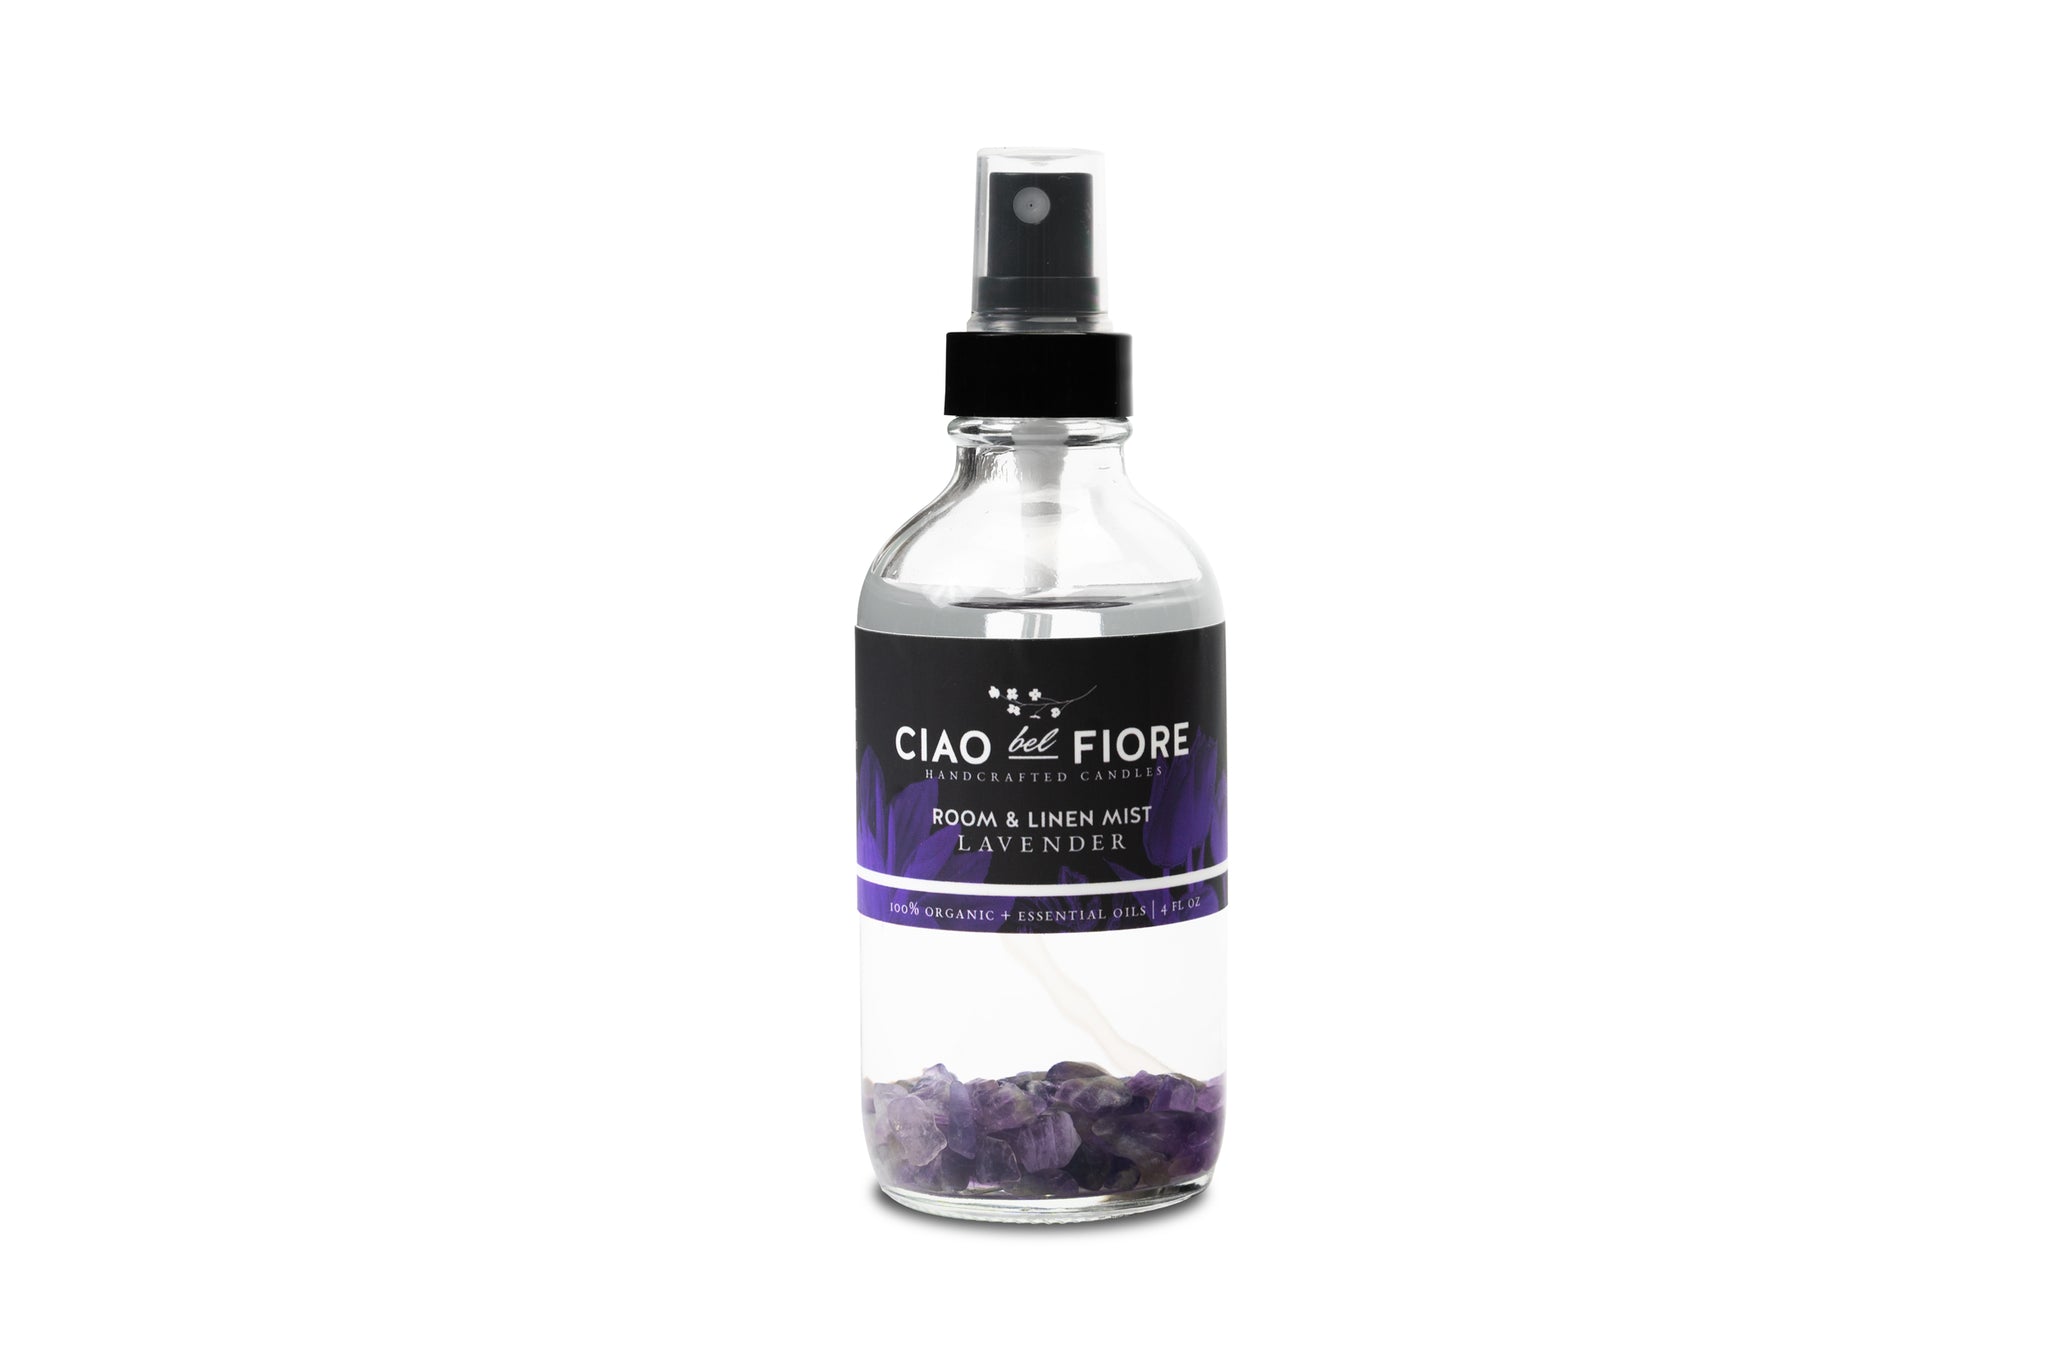 French Lavender | Room & Linen Mist